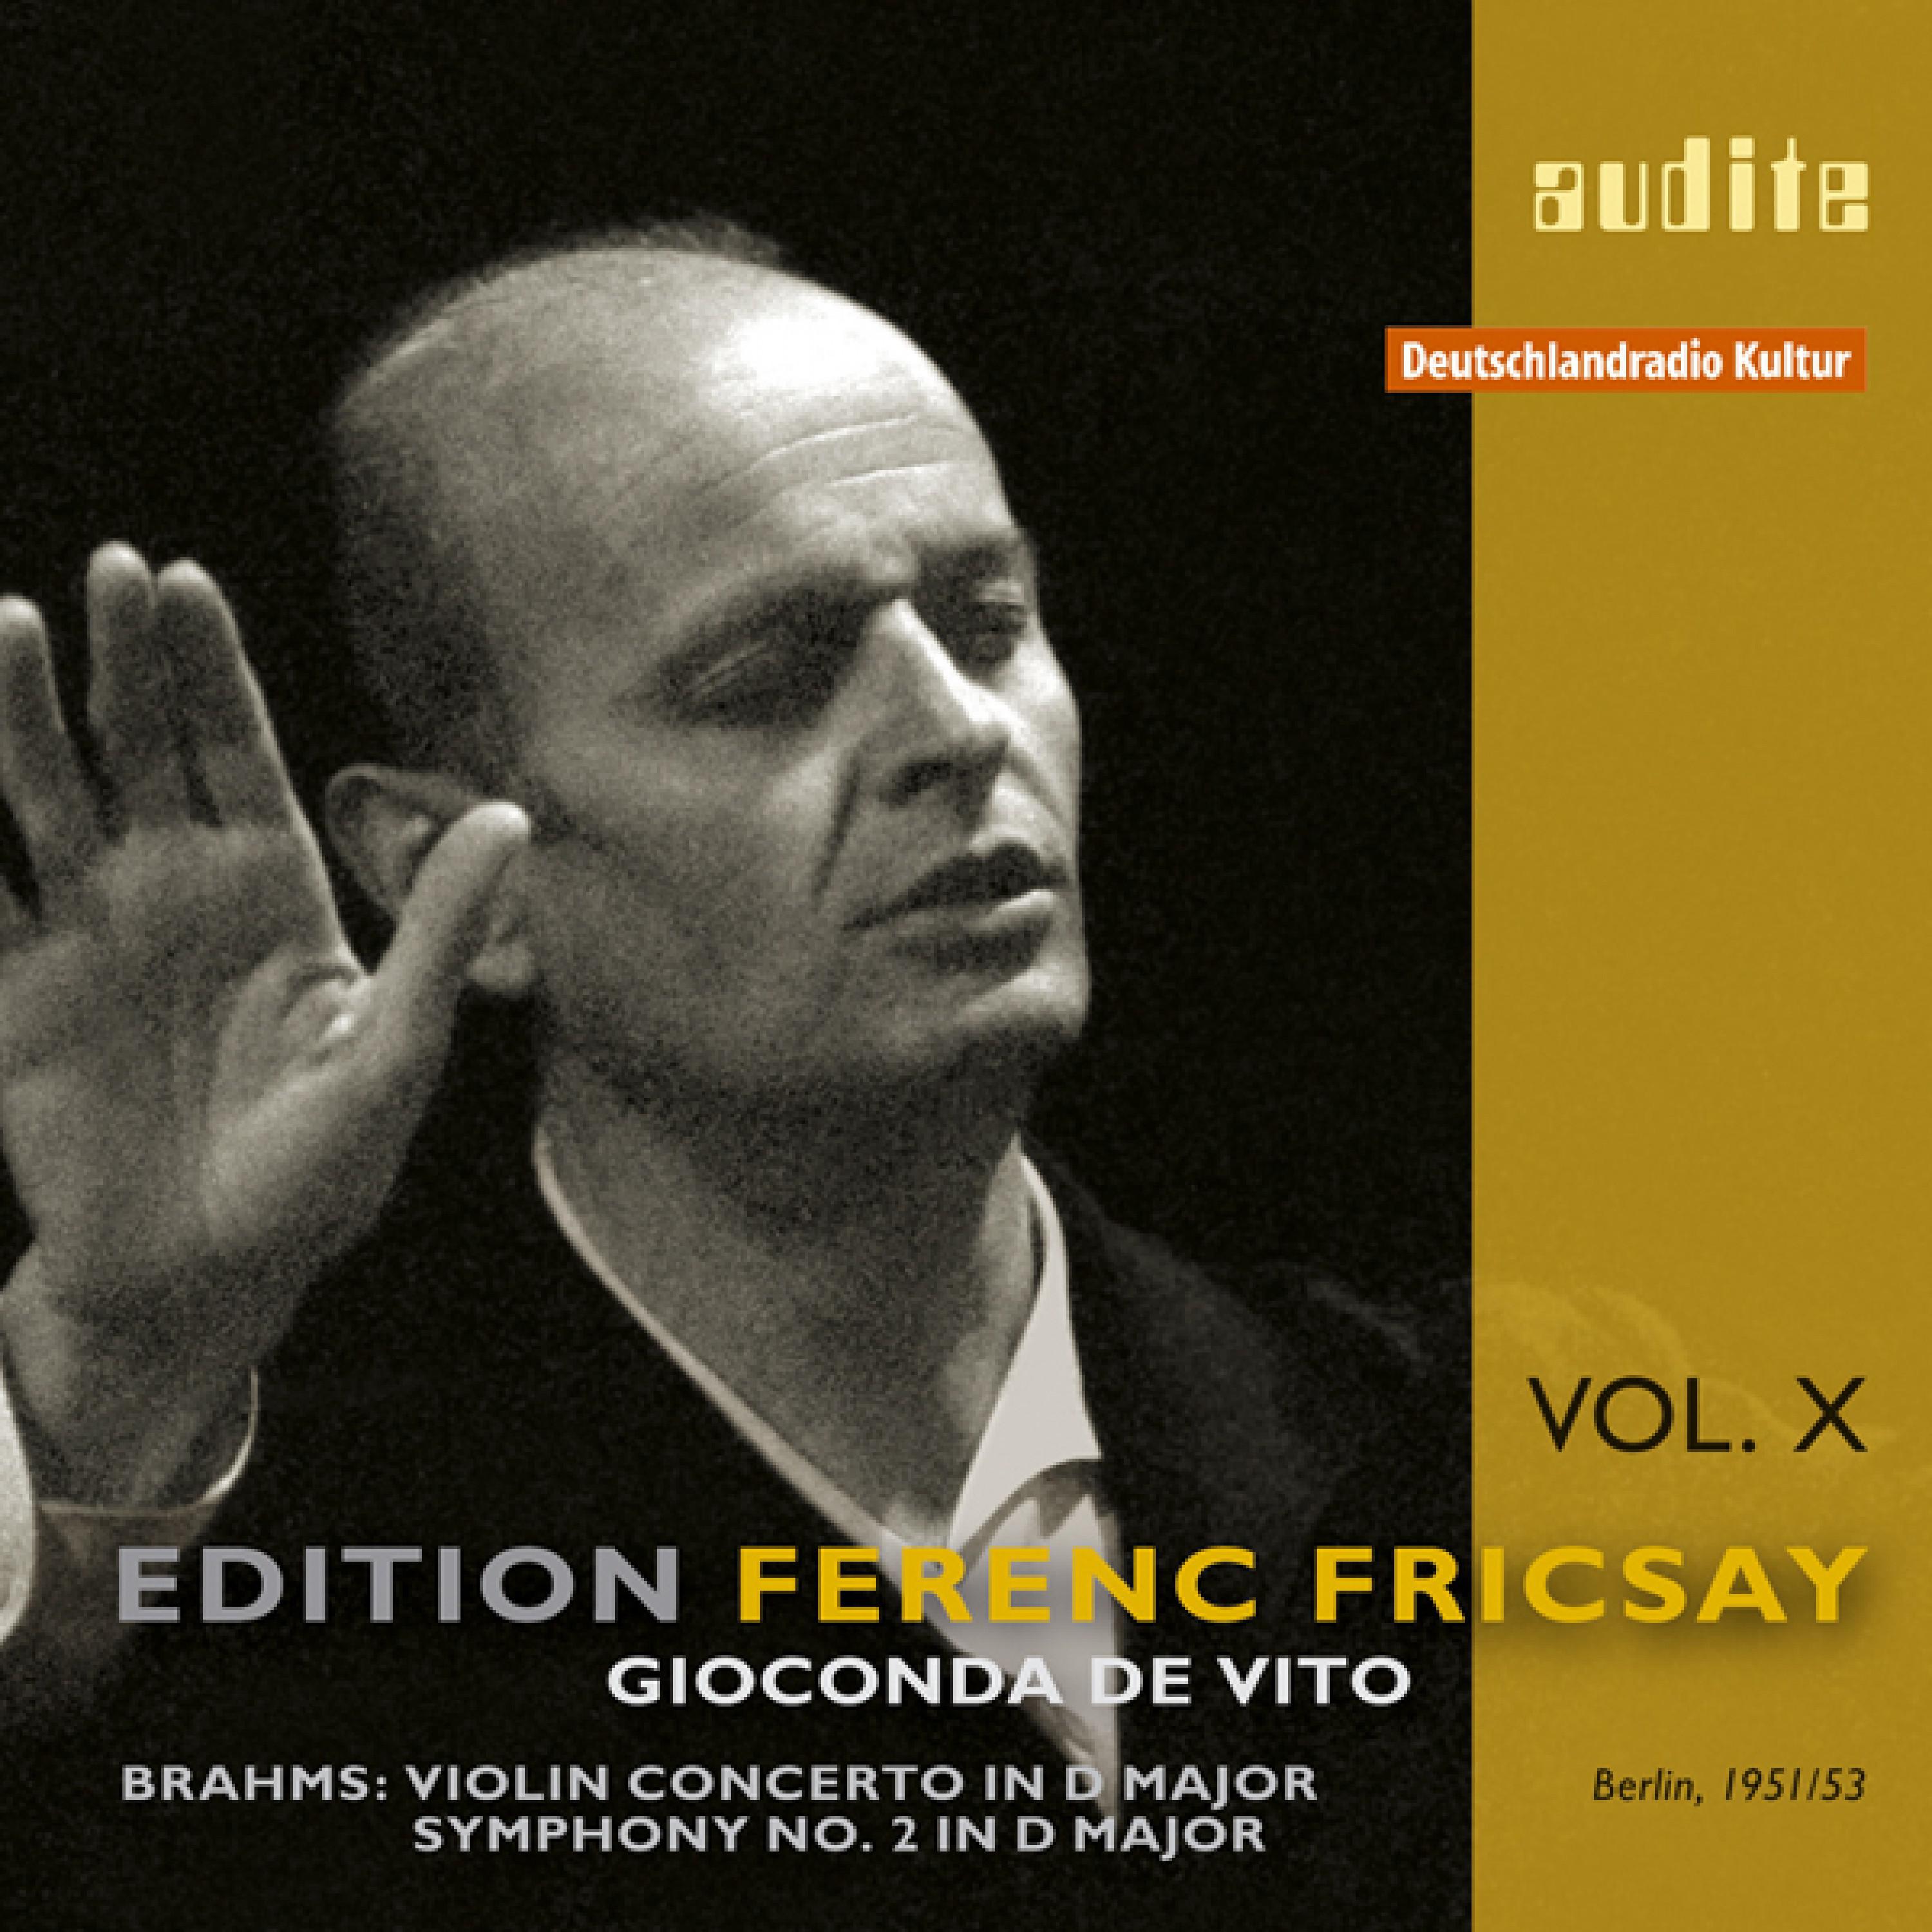 Concerto for Violin and Orchestra in D Major, Op. 77: I. Allegro non Troppo